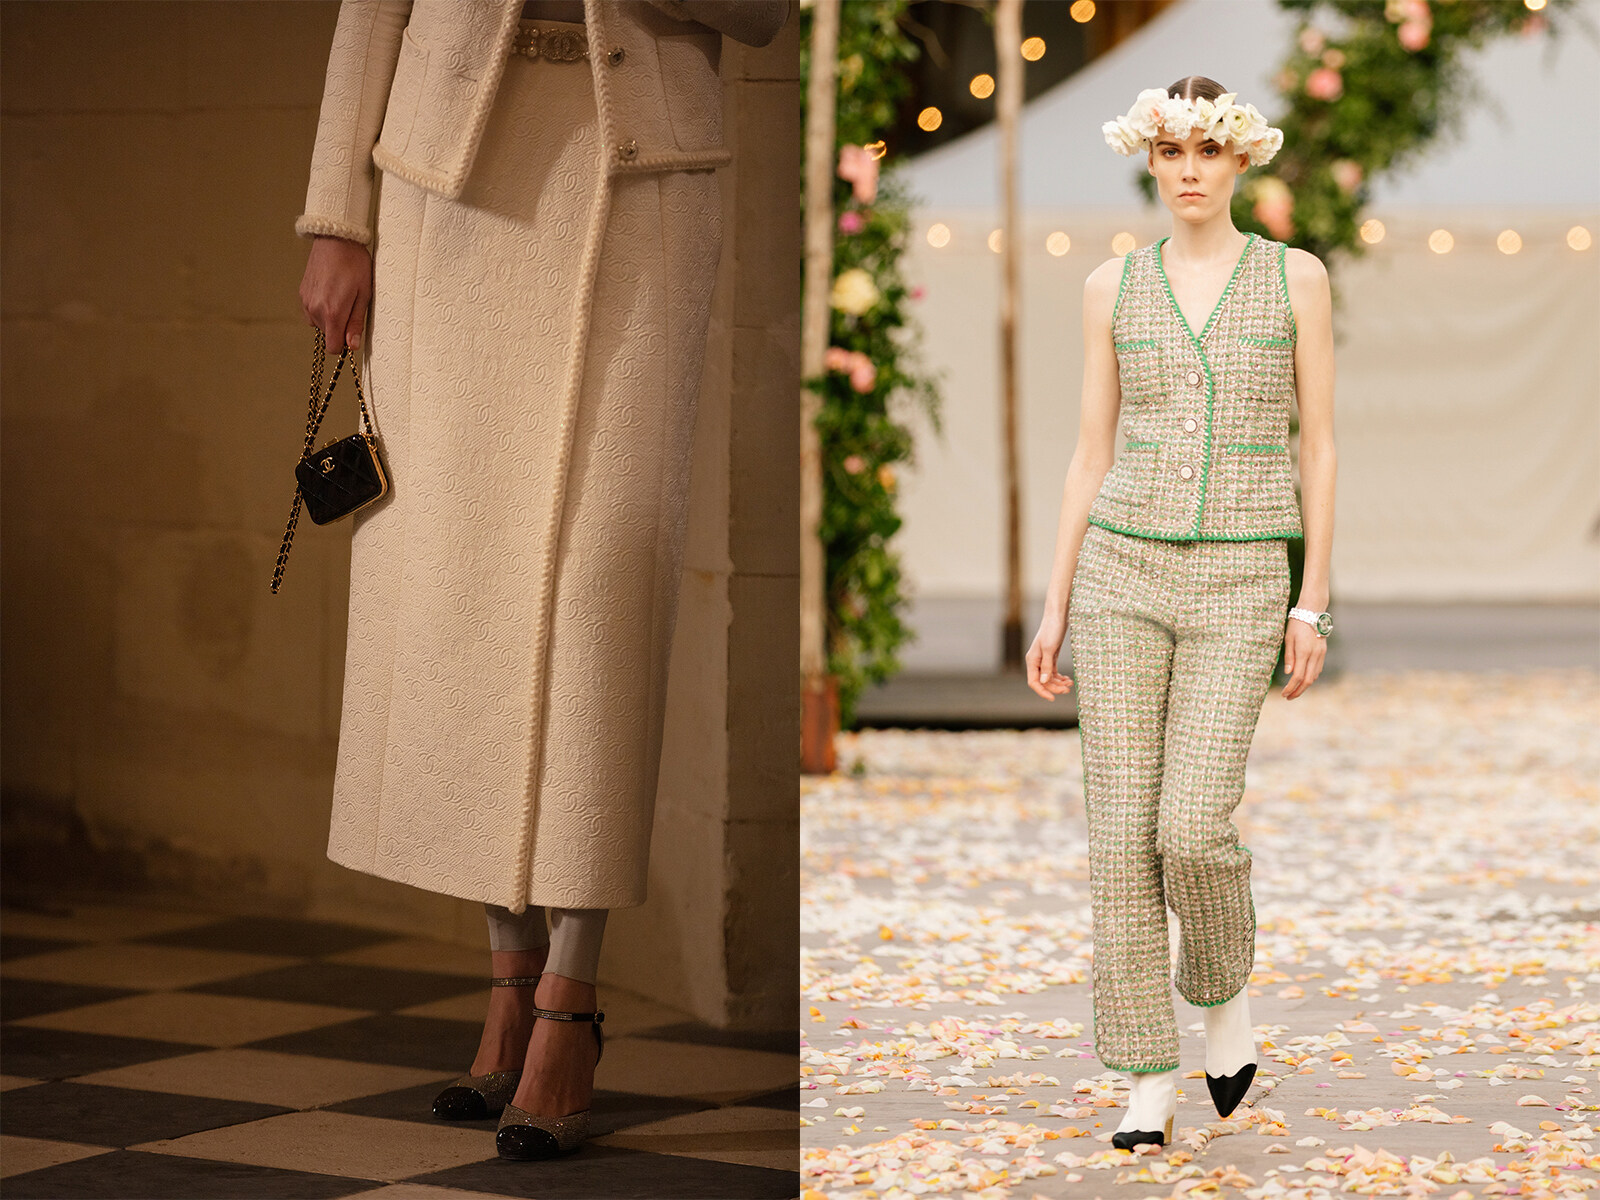 而現任藝術總監Virginie Viard當然亦繼承了Gabrielle Chanel的精神，將雙色鞋獨有的魅力與